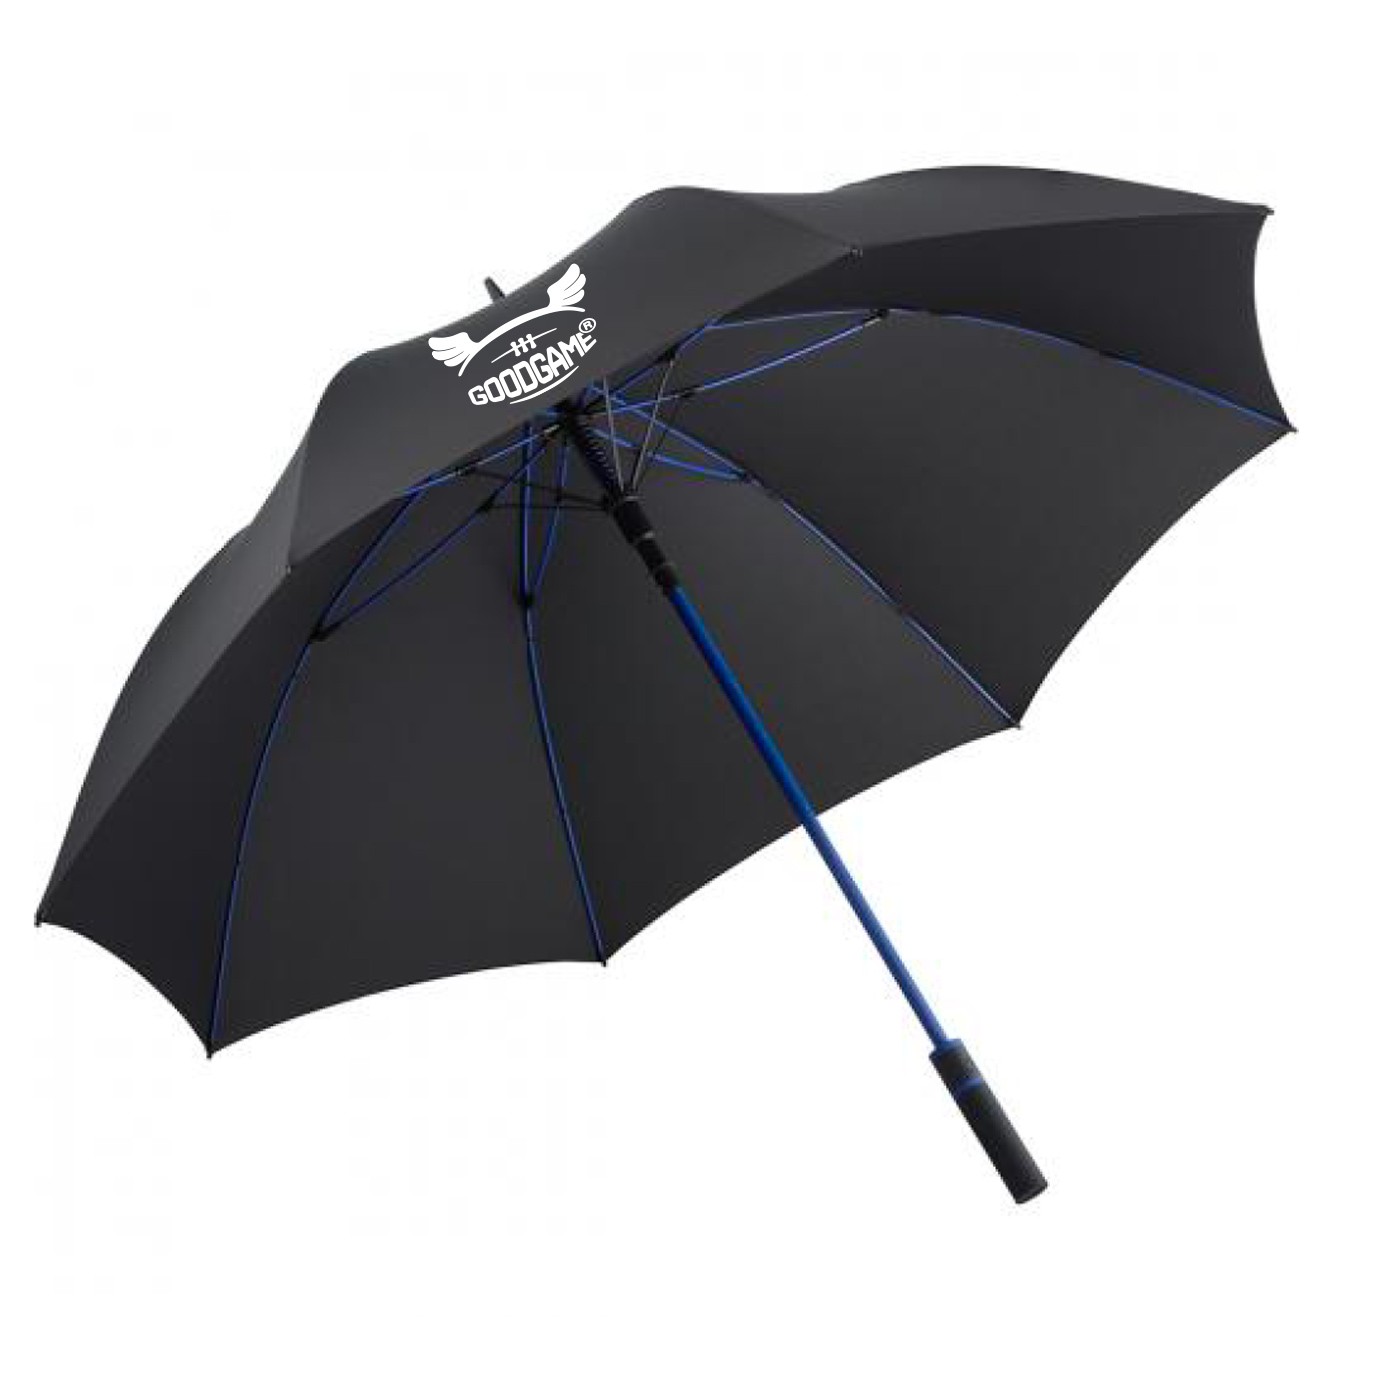 Grand parapluie de golf solide bleu